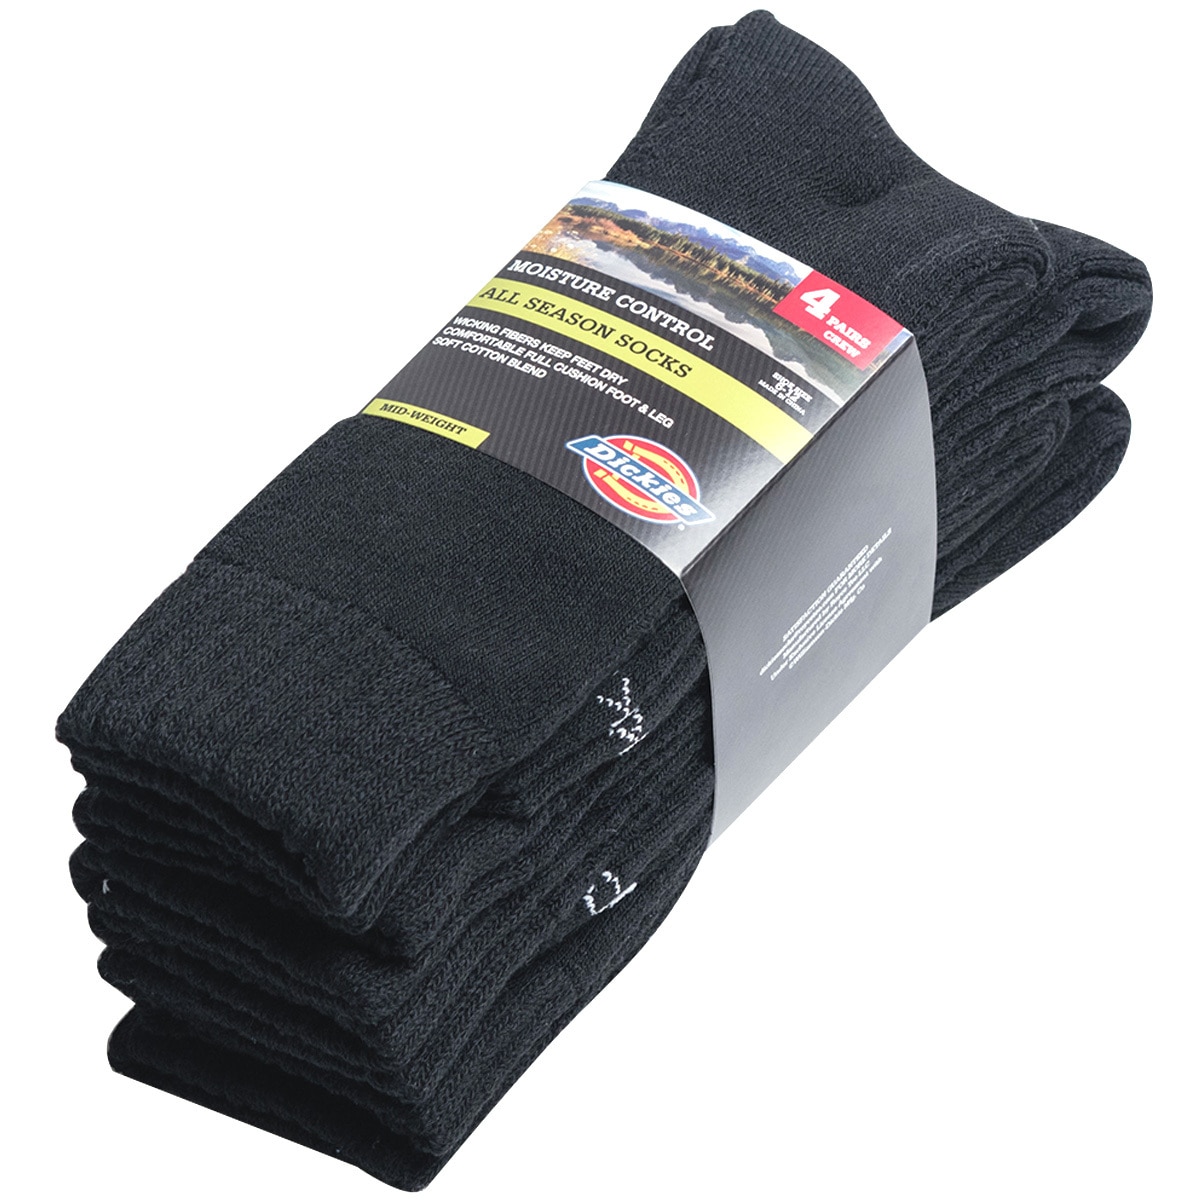 Dickies 4 pack socks - Black